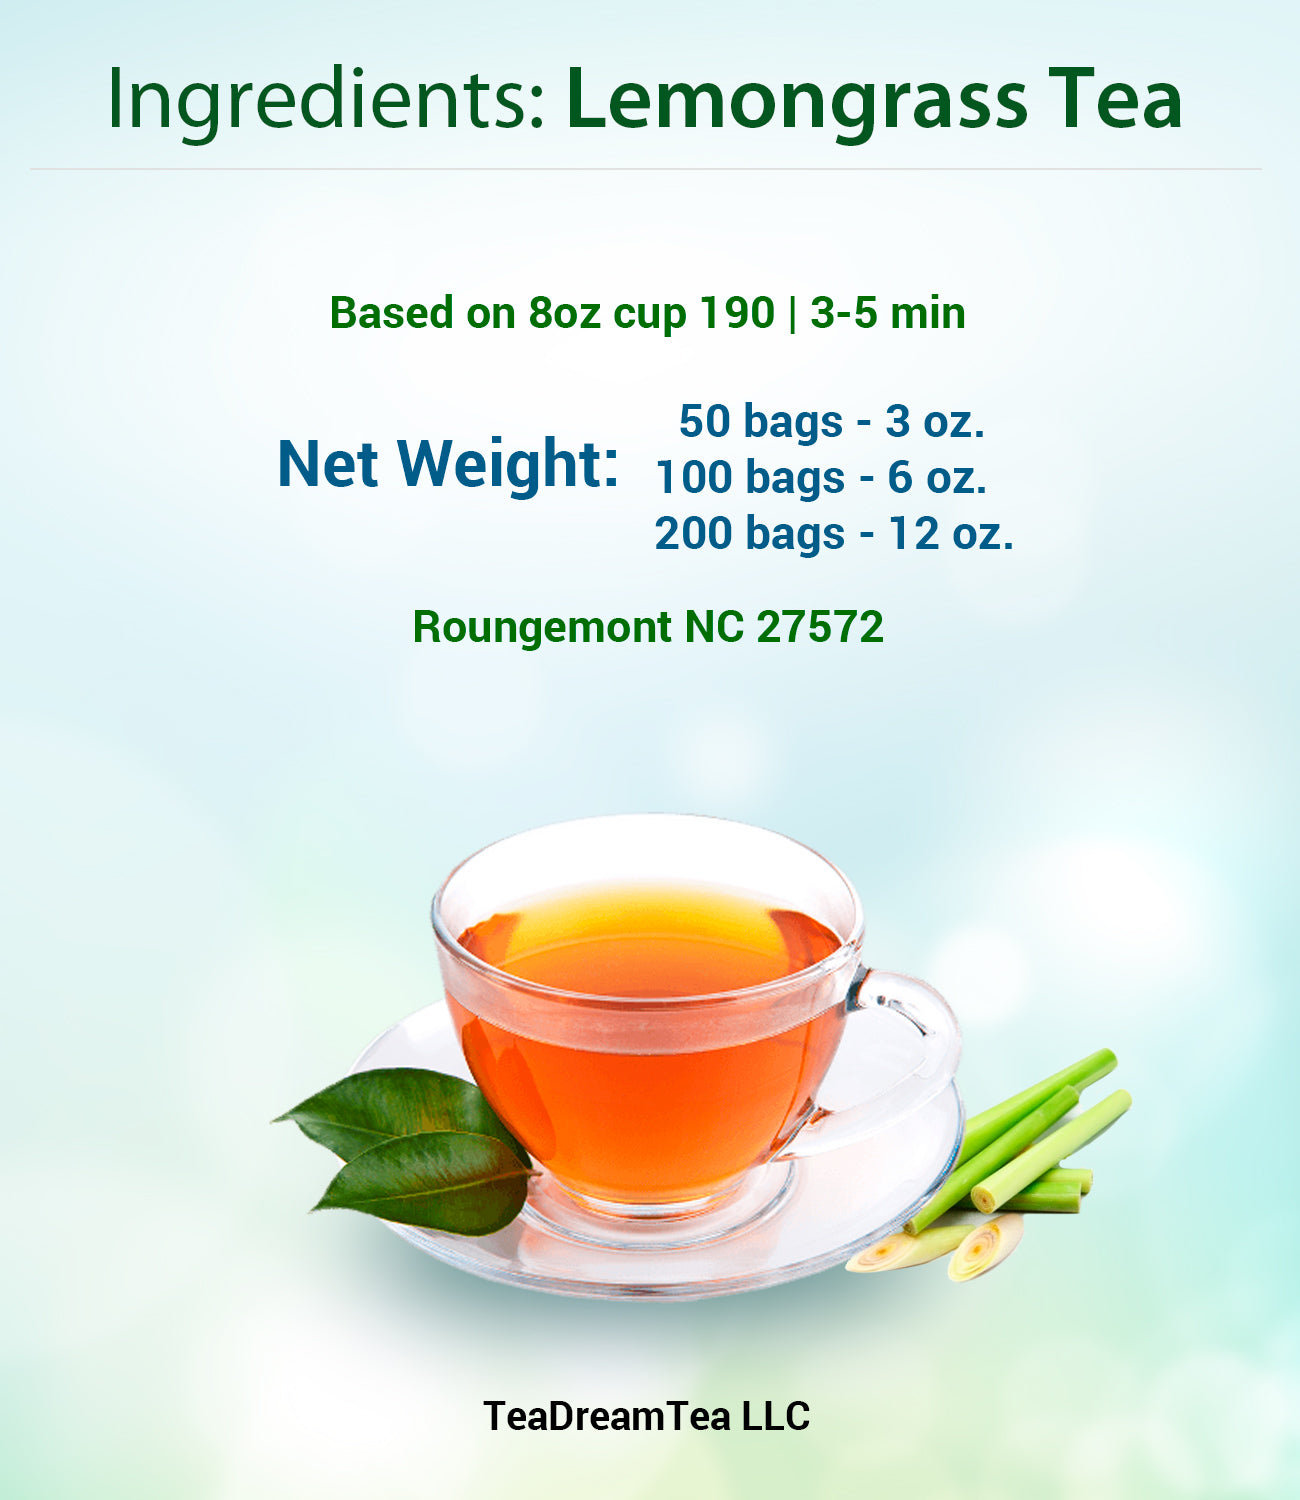 Lemongrass Tea Bags - Size 50, 100 and 200 bags - TeaDreamTea